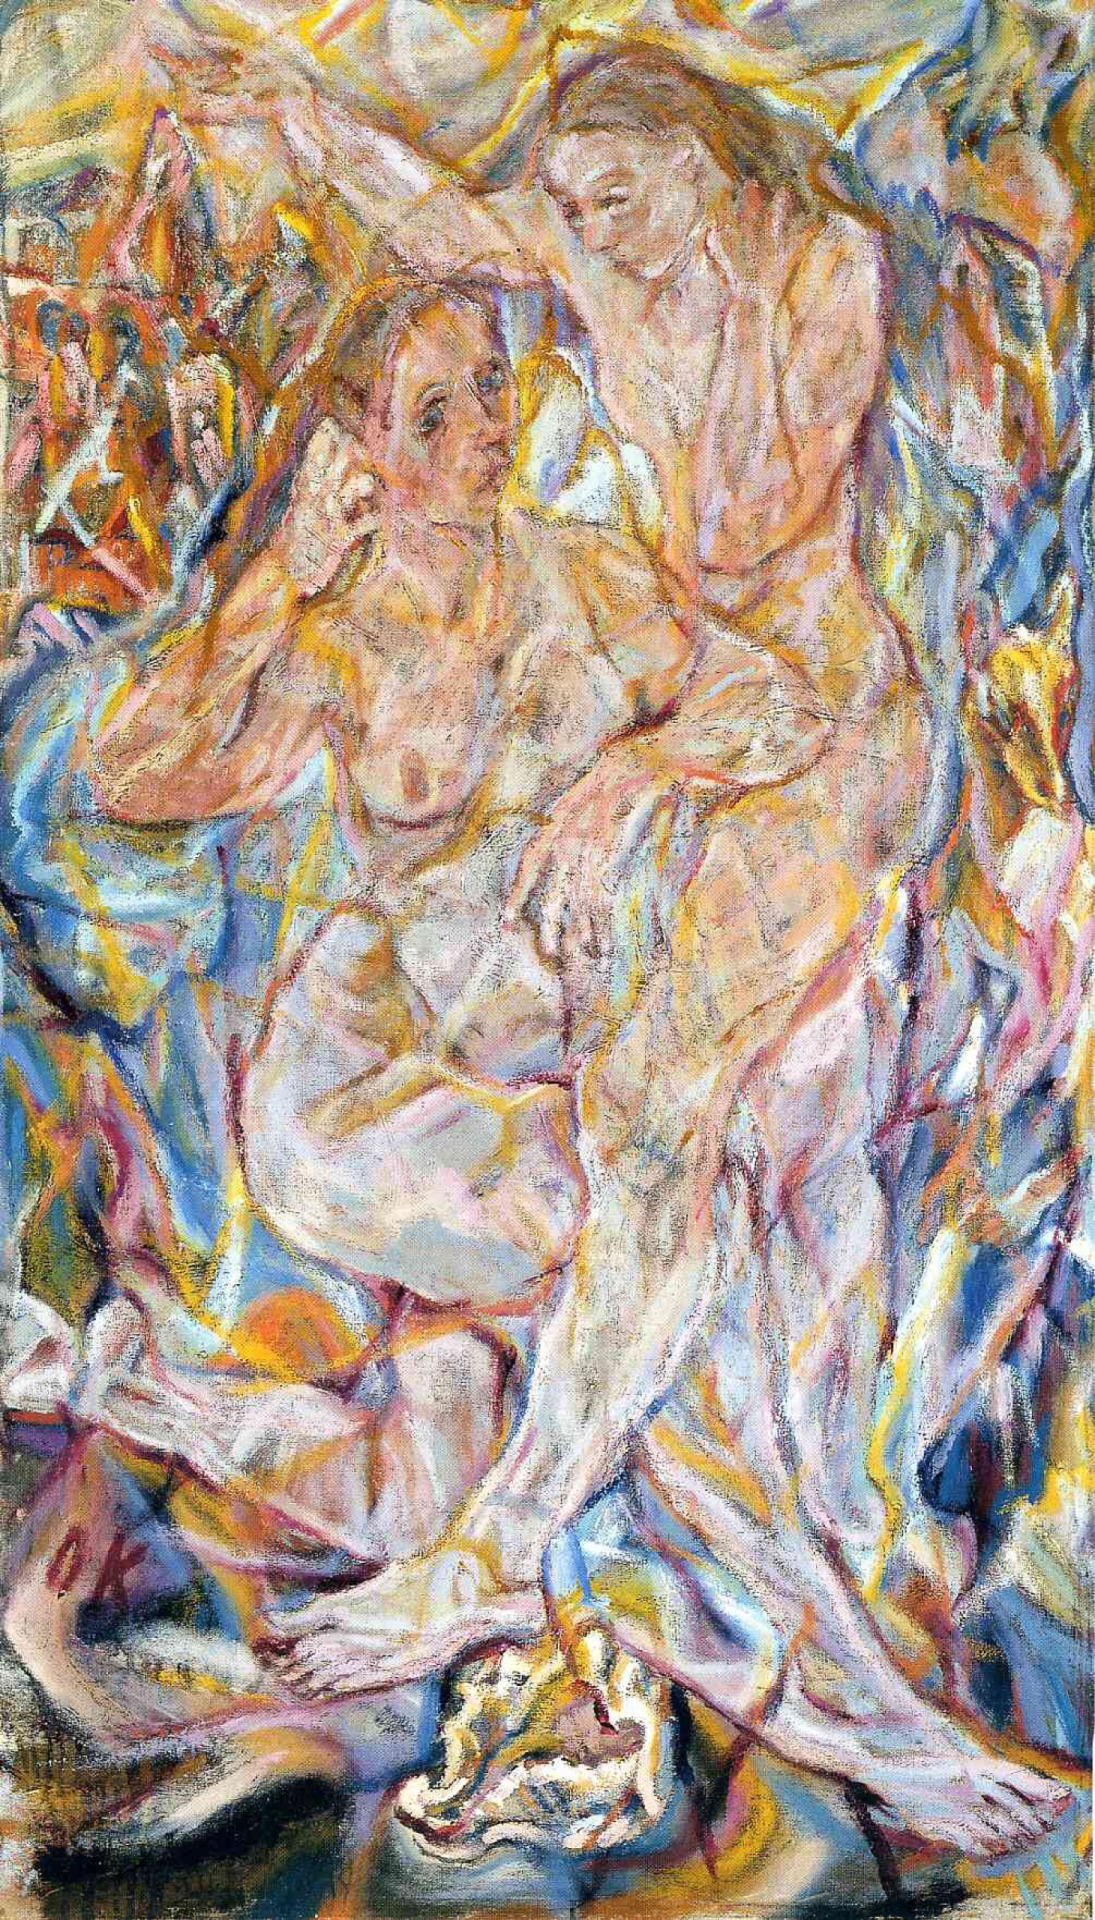 Double Nude: Two Women, Oskar Kokoschka, 1912